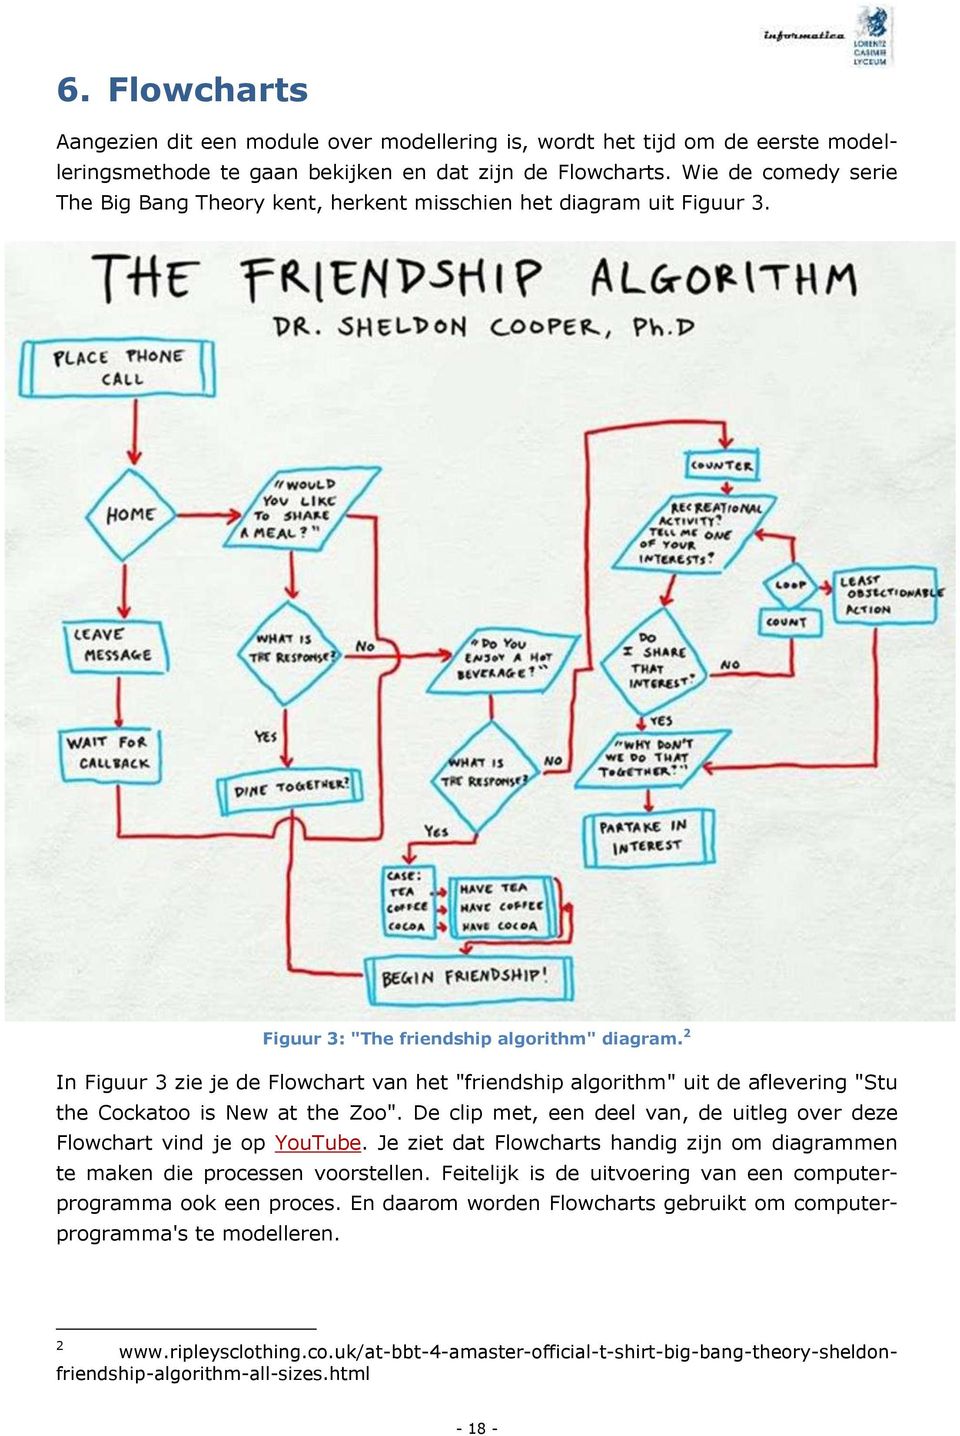 2 In Figuur 3 zie je de Flowchart van het "friendship algorithm" uit de aflevering "Stu the Cockatoo is New at the Zoo". De clip met, een deel van, de uitleg over deze Flowchart vind je op YouTube.